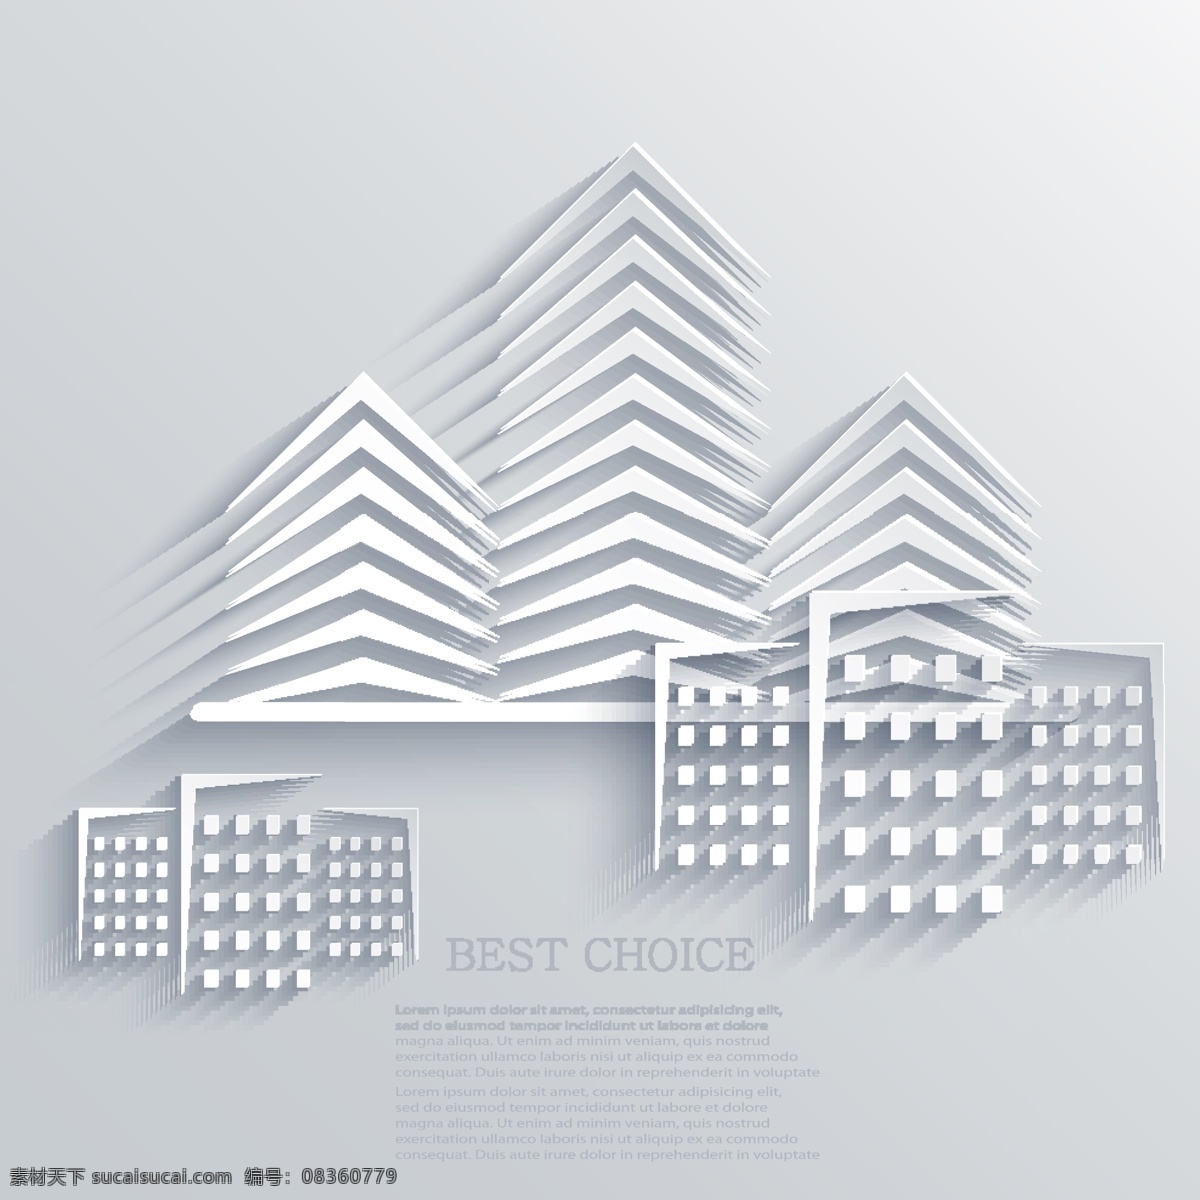 典雅 艺术 剪纸 文本 模板 矢量 3d 白色 背景 城市 创意 蝴蝶 建筑 音符 线路图 anmin 矢量图 其他矢量图